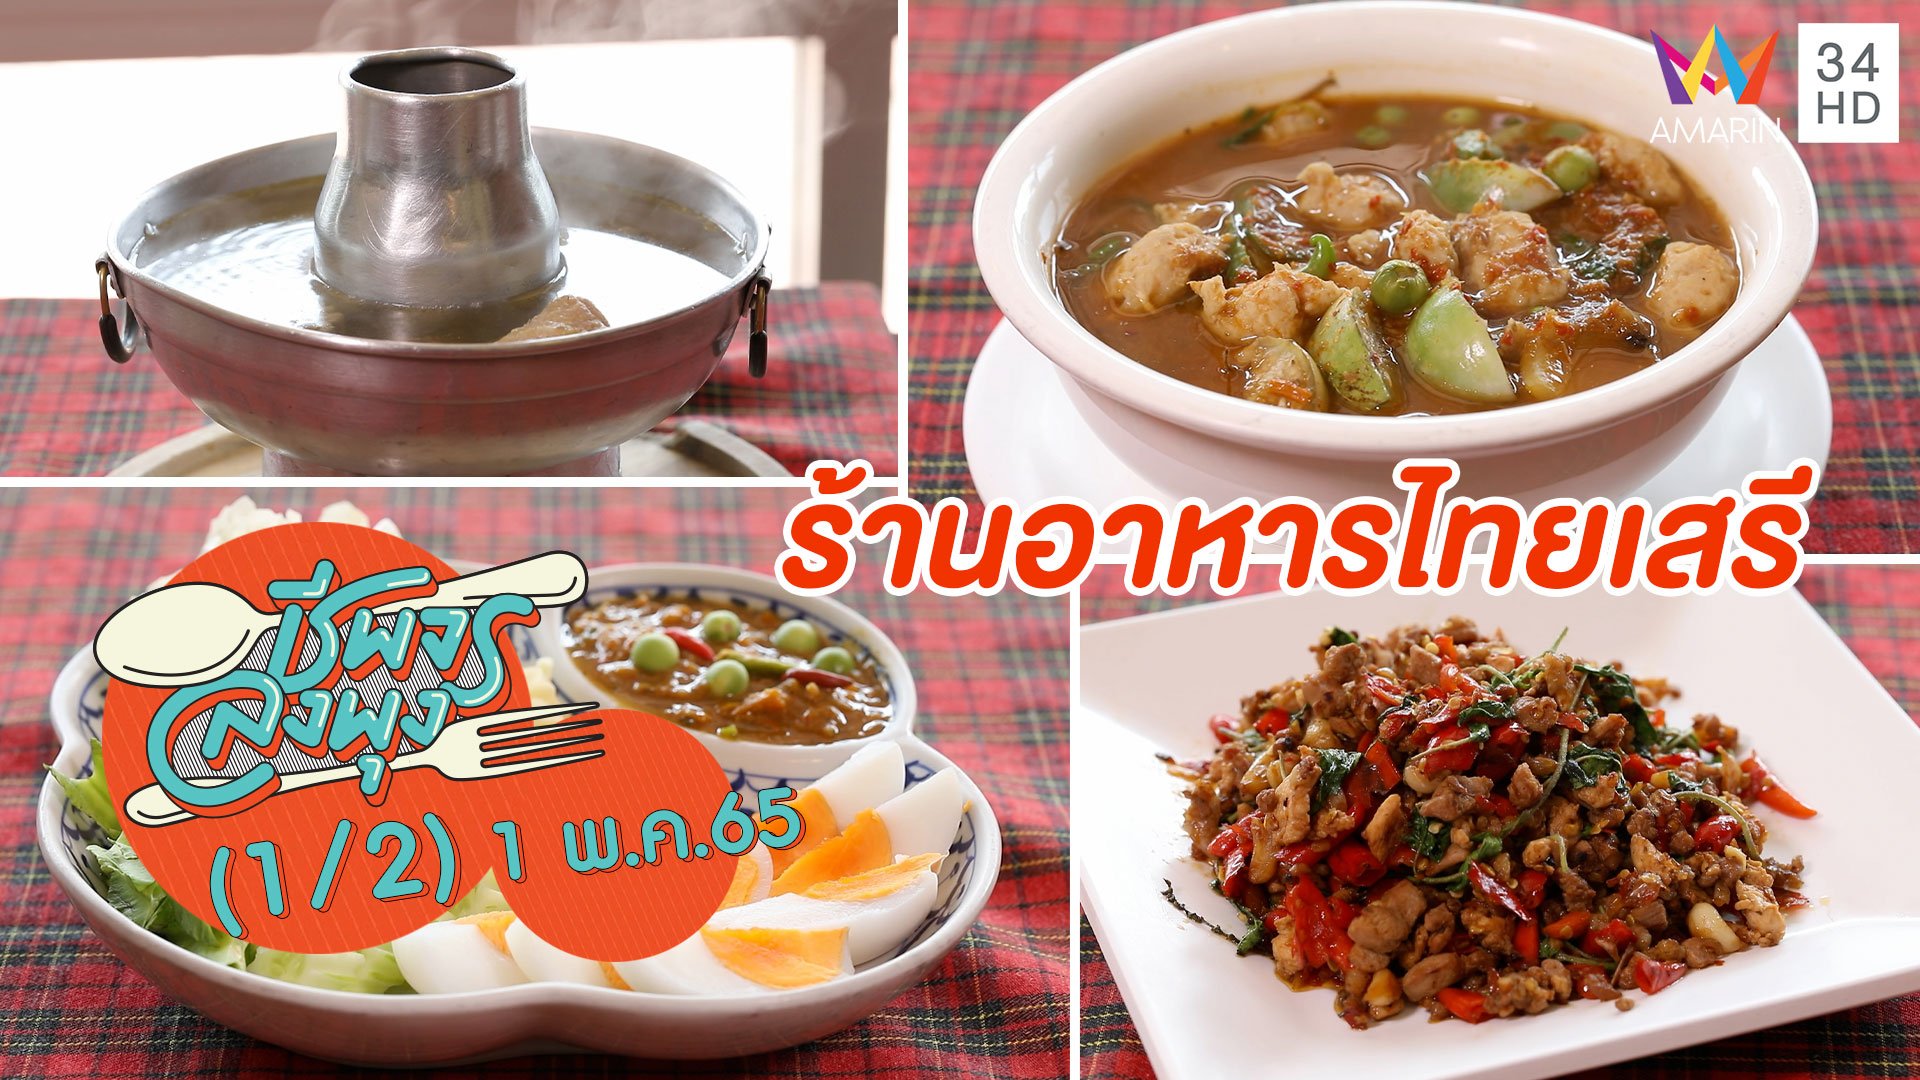 ตำนานความอร่อยแห่งเมืองกาญจนบุรี @ ร้านอาหารไทยเสรี | ชีพจรลงพุง | 1 พ.ค. 65 (1/2) | AMARIN TVHD34